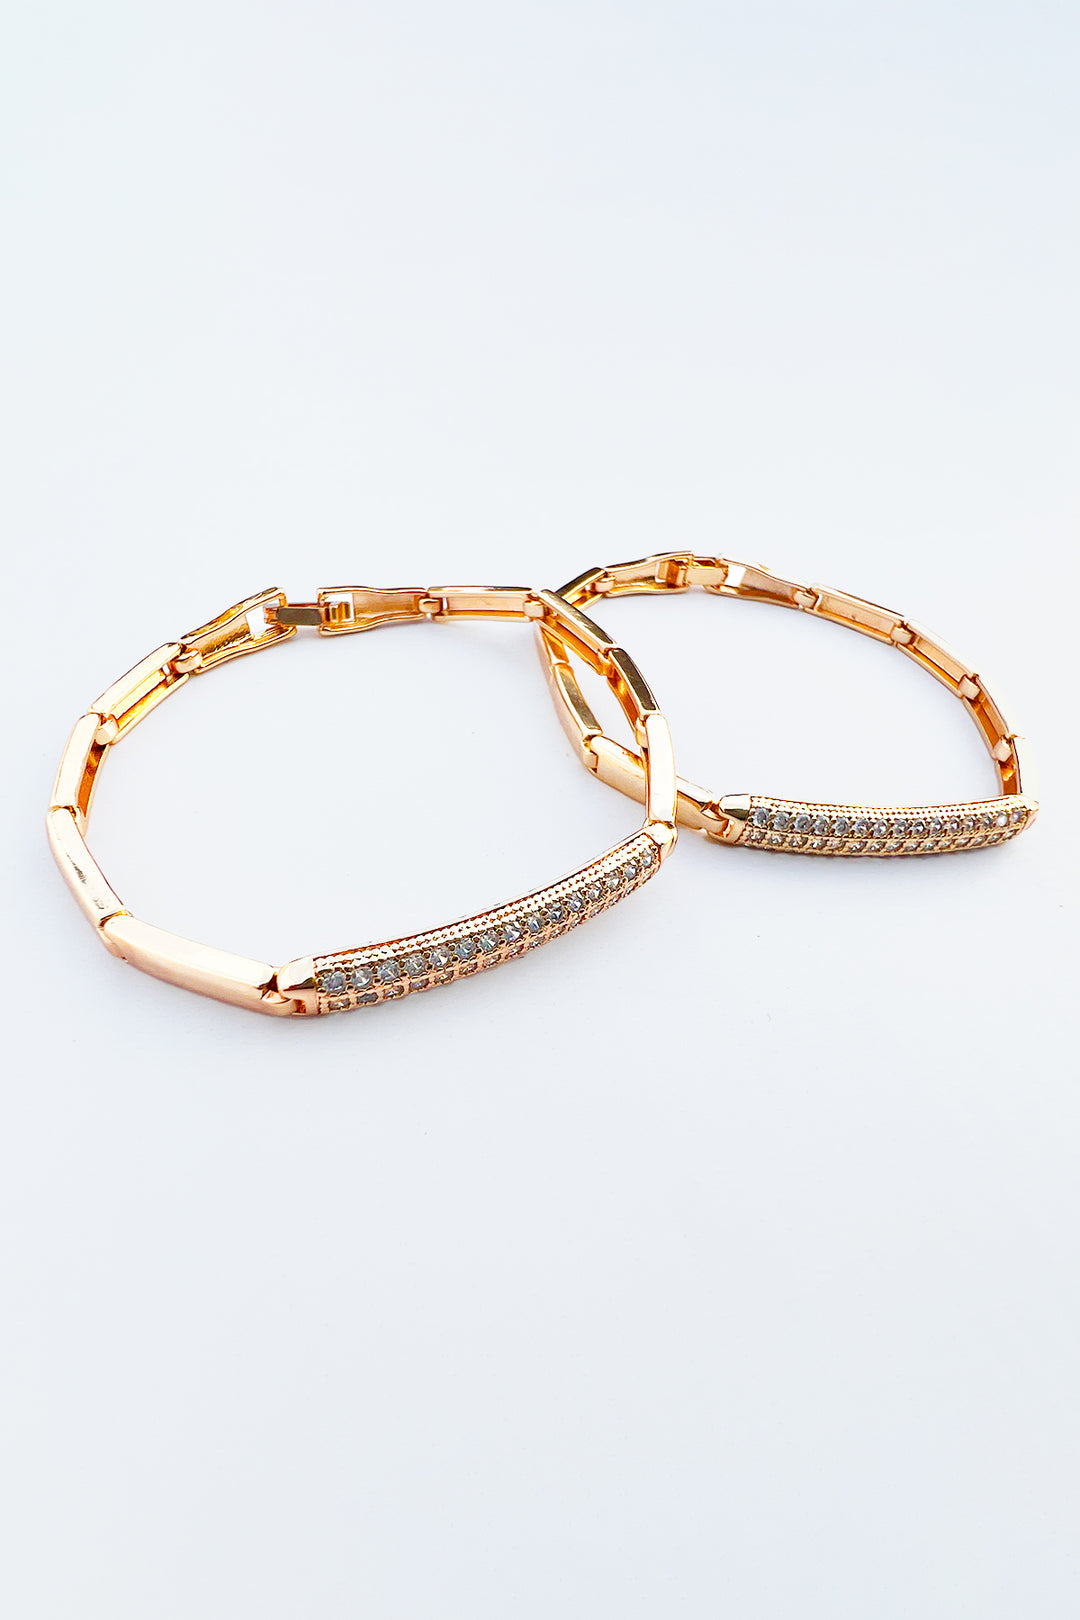 Golden Charm Bracelet - S23 - WJW0030